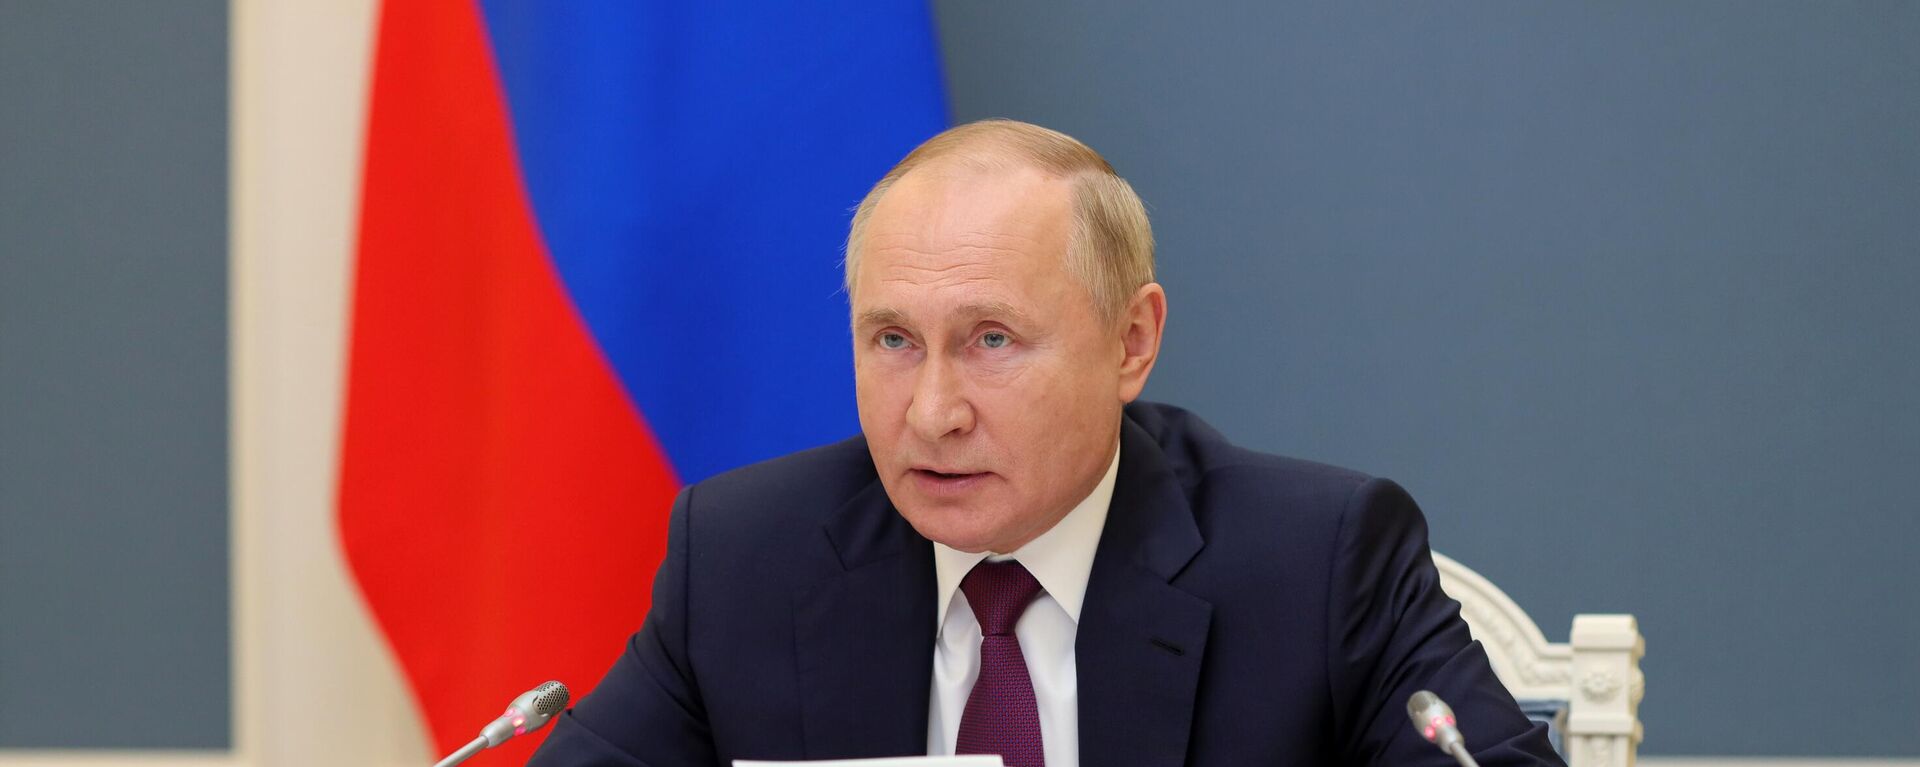 Президент РФ В. Путин принял участие в саммите Группы двадцати - Sputnik Азербайджан, 1920, 31.10.2021